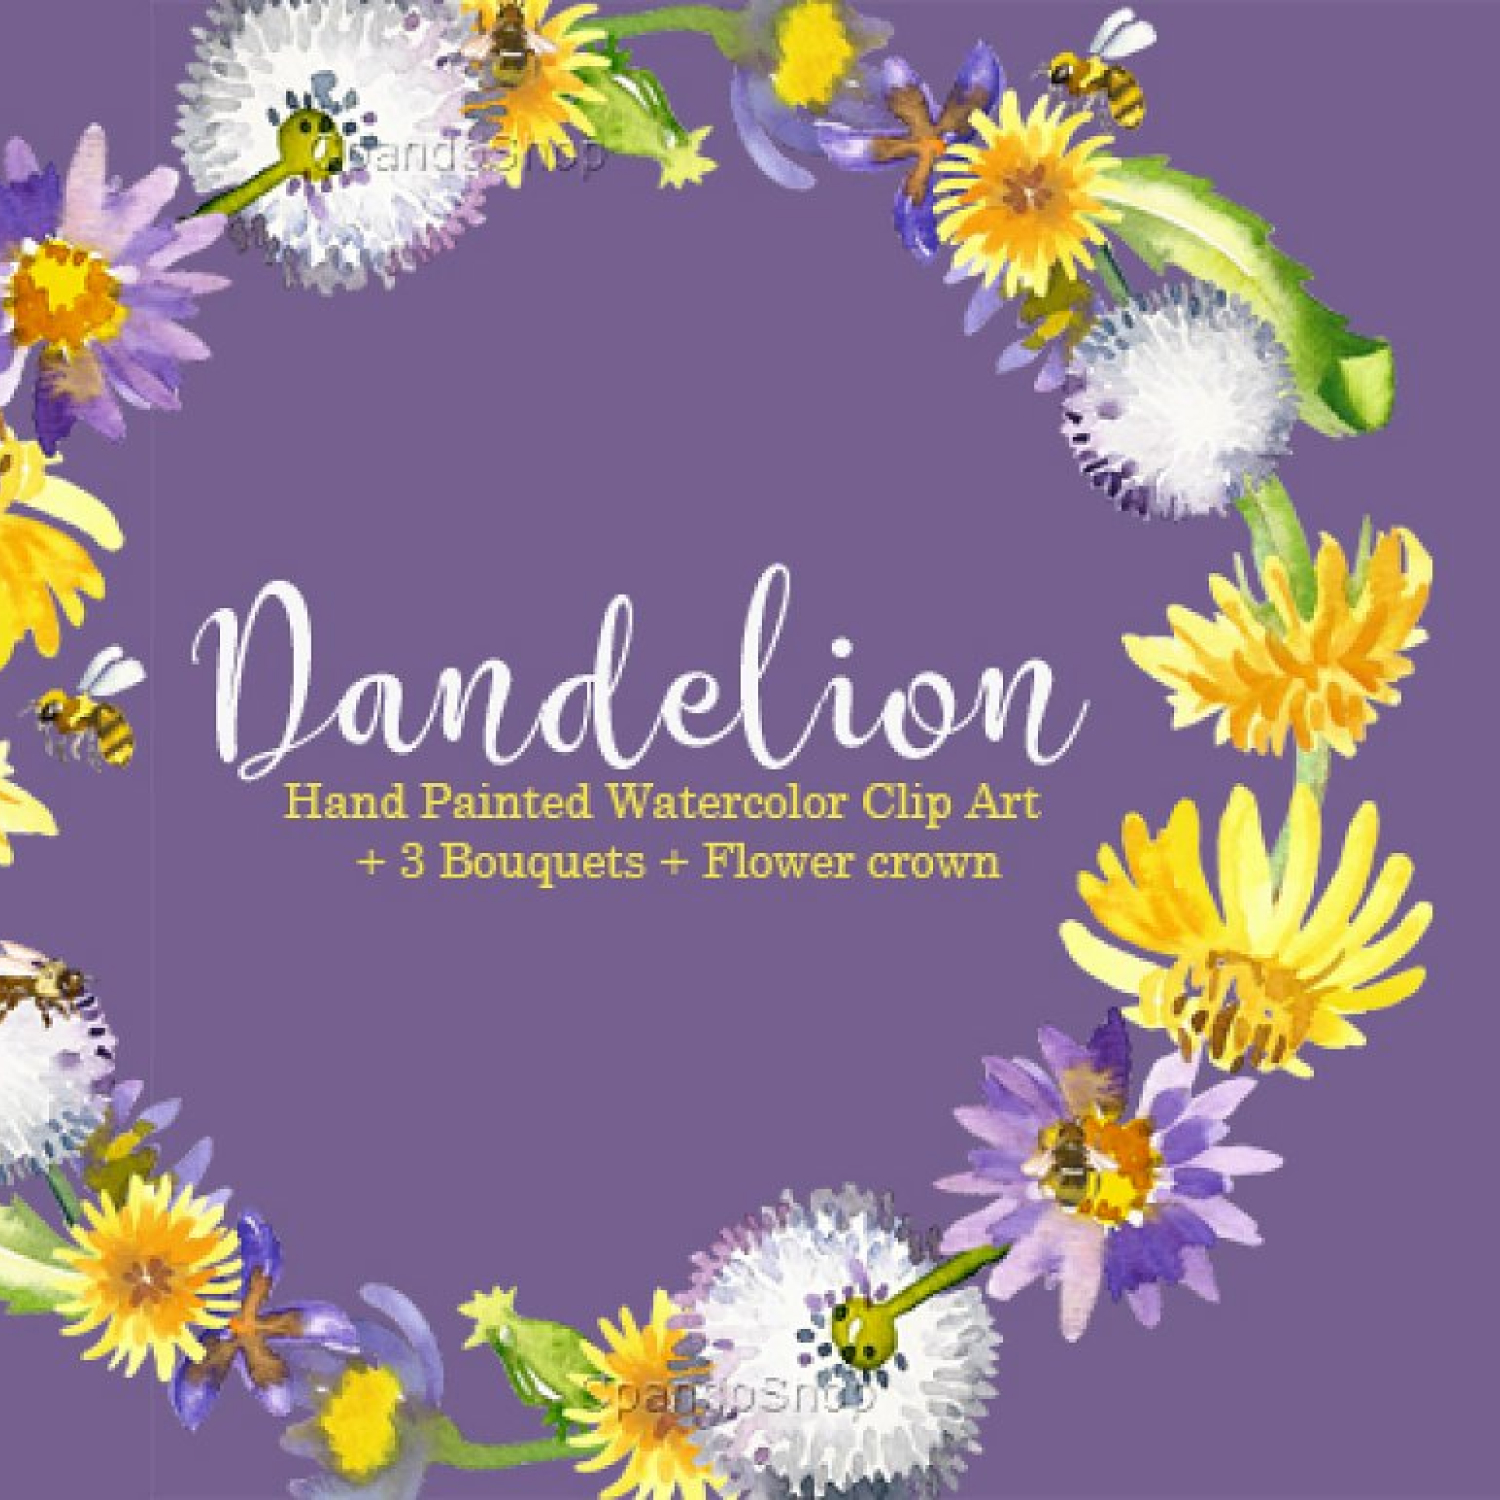 https://masterbundles.com/wp-content/uploads/edd/2022/06/01-dandelion-floral-watercolor-clipart-1500-1500.jpg